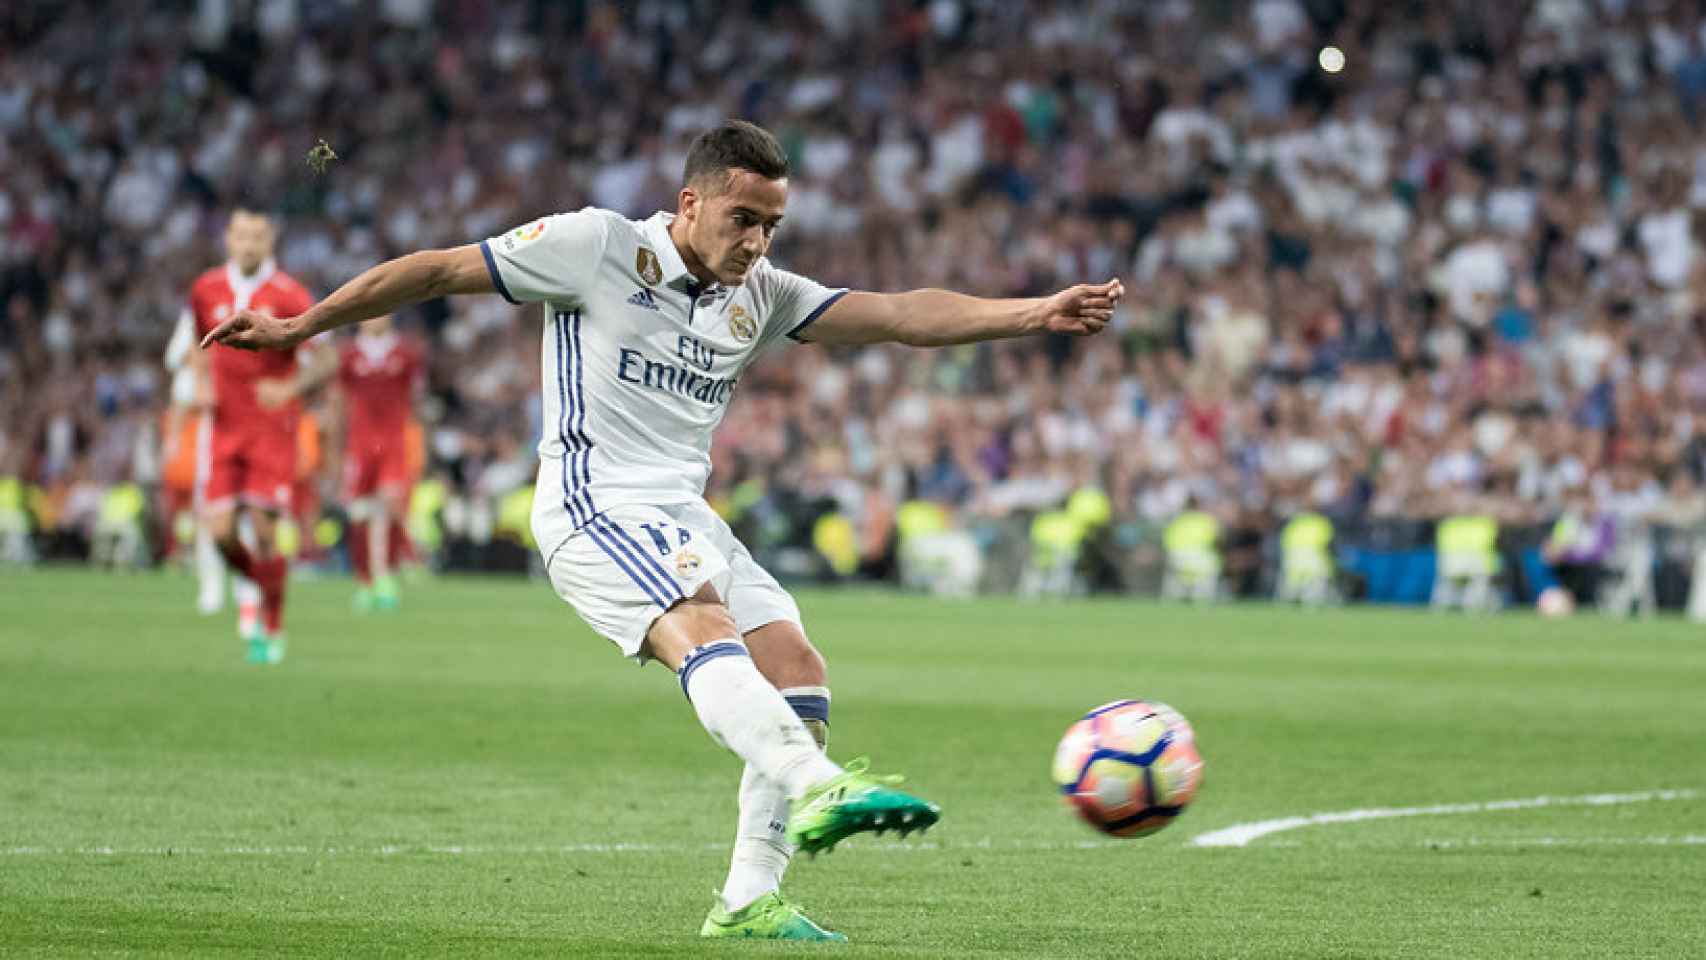 Lucas Vázquez intenta un tiro a puerta. Foto: Pedro Rodríguez / El Bernabéu